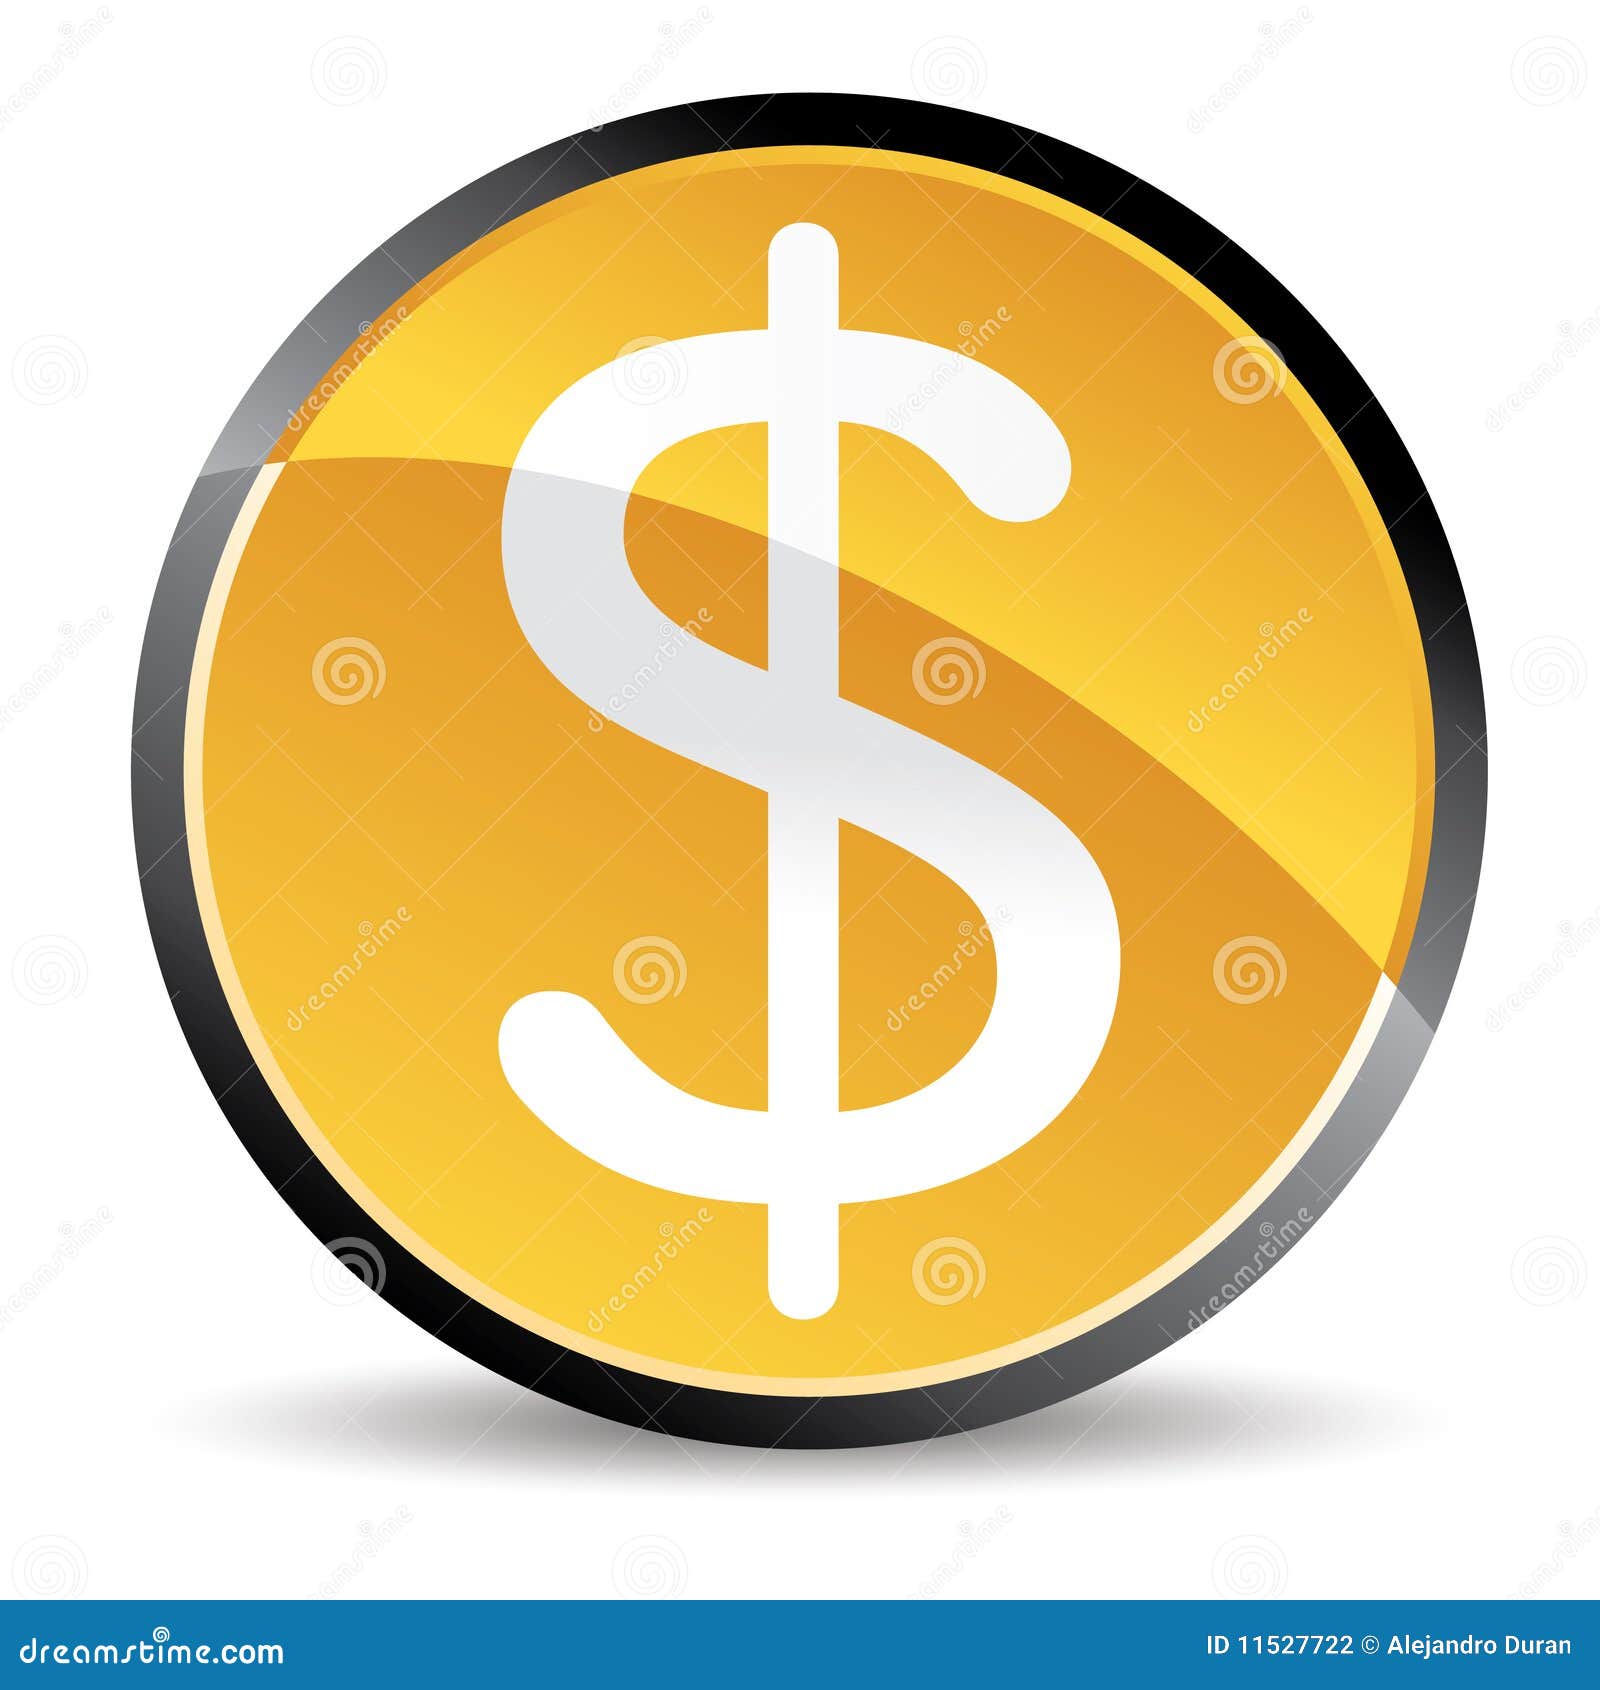 Money Symbol Stock Photography - Image: 11527722